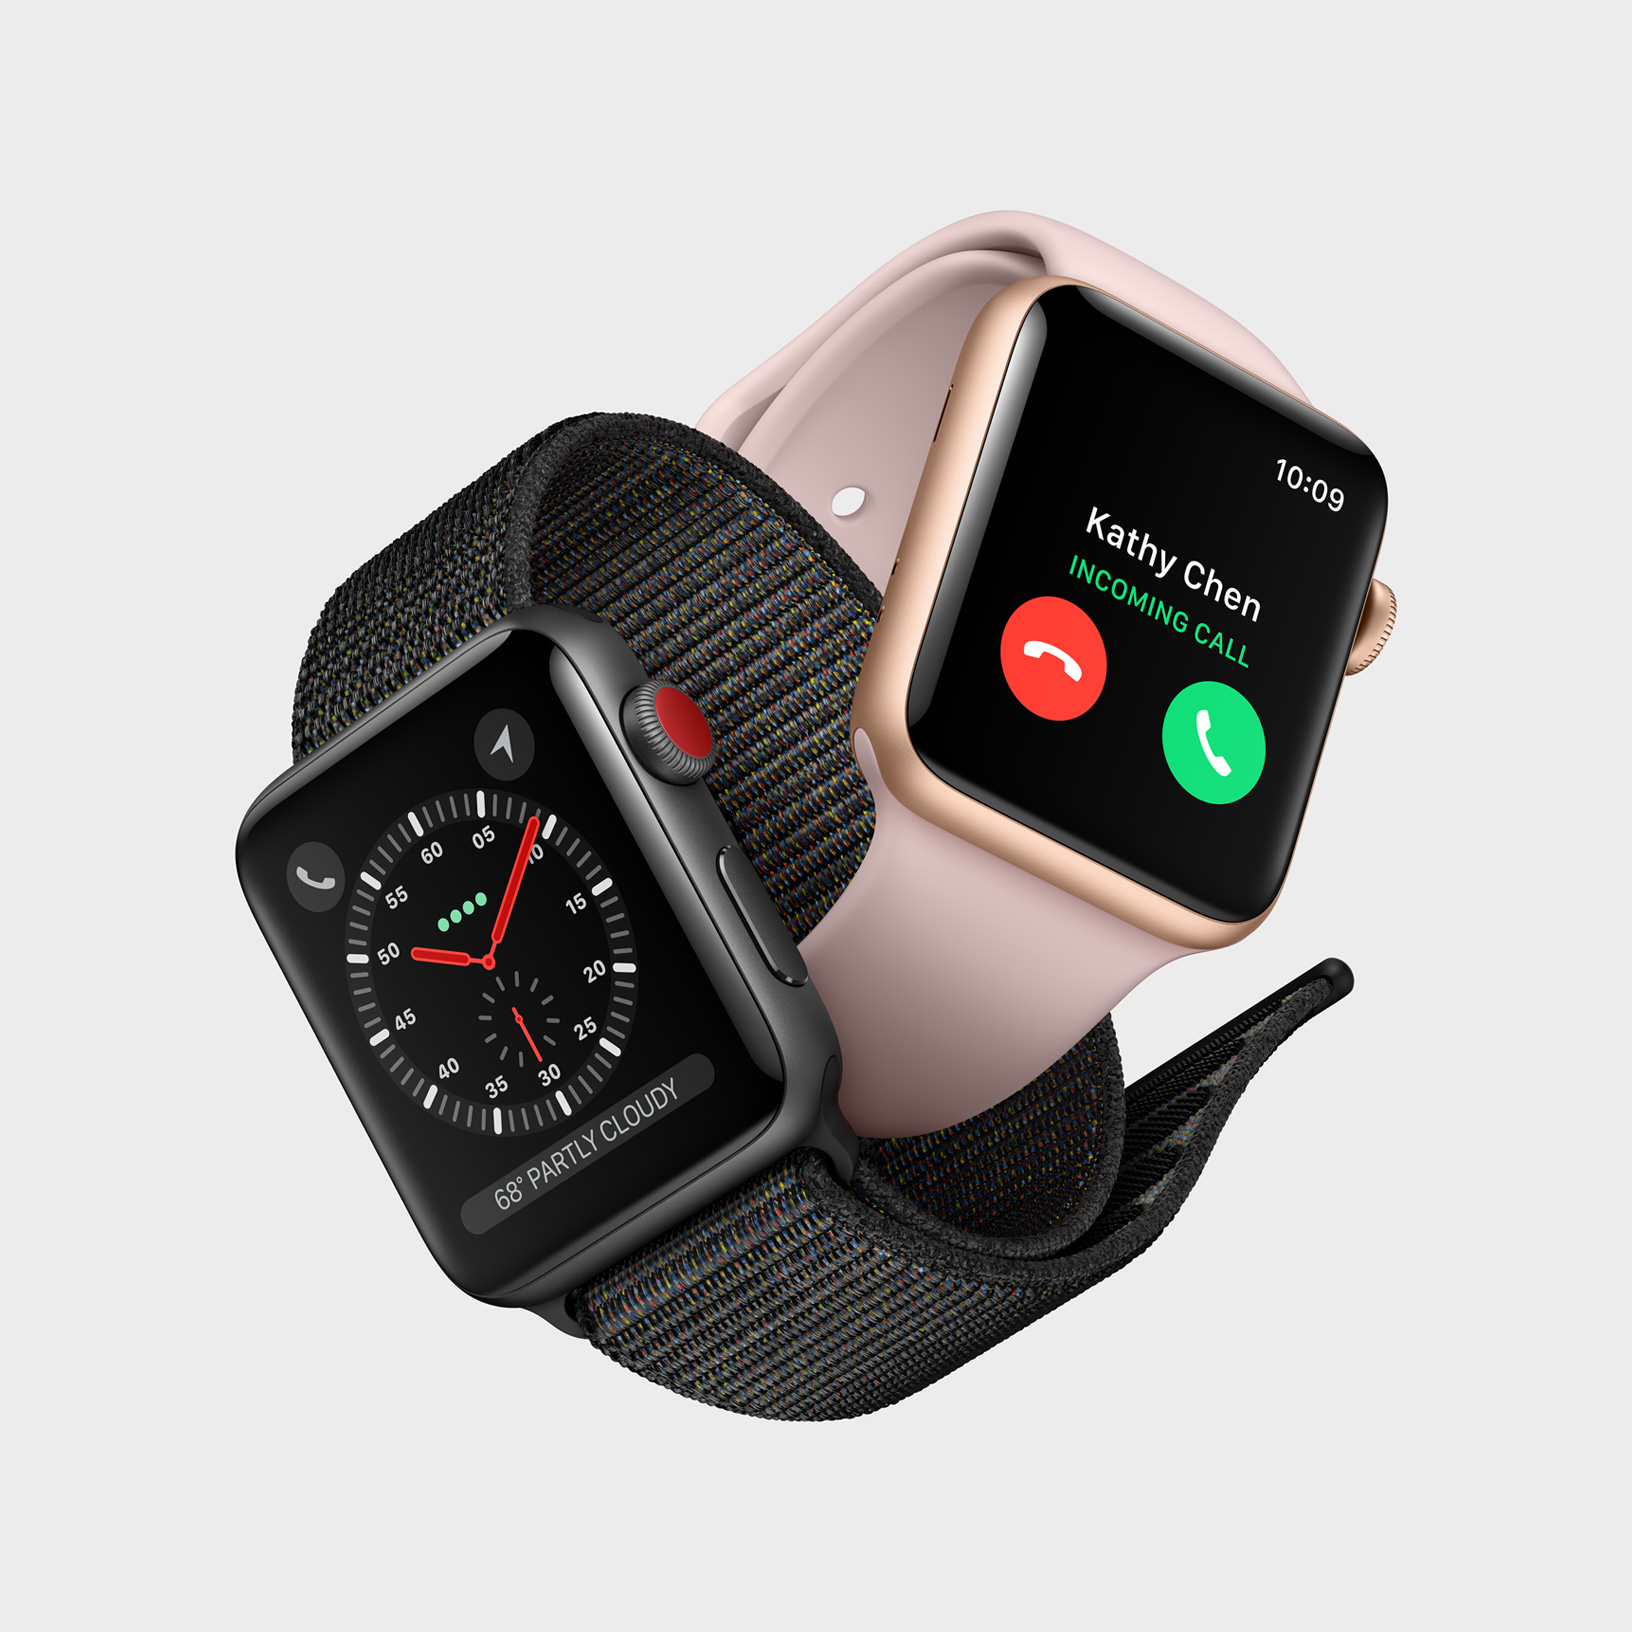 Immagine pubblicata in relazione al seguente contenuto: Apple introduce i Watch Serie 3 con CPU dual-core, connettivit LTE e watchOS 4 | Nome immagine: news27030_Apple-Watch-Serie-3_1.jpg